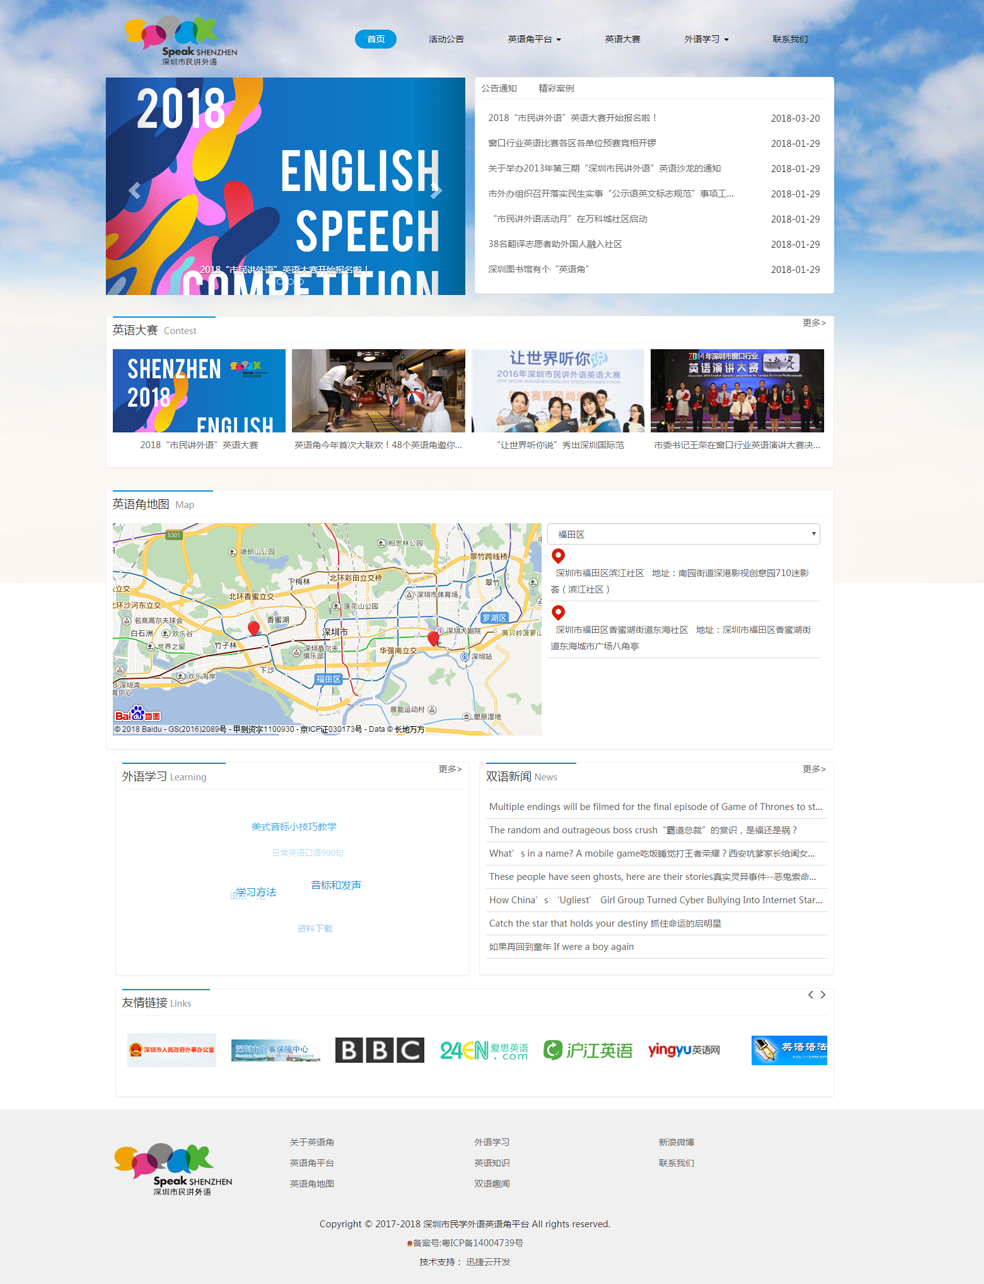 深圳市民学外语英语角平台-2018年网站首页截图